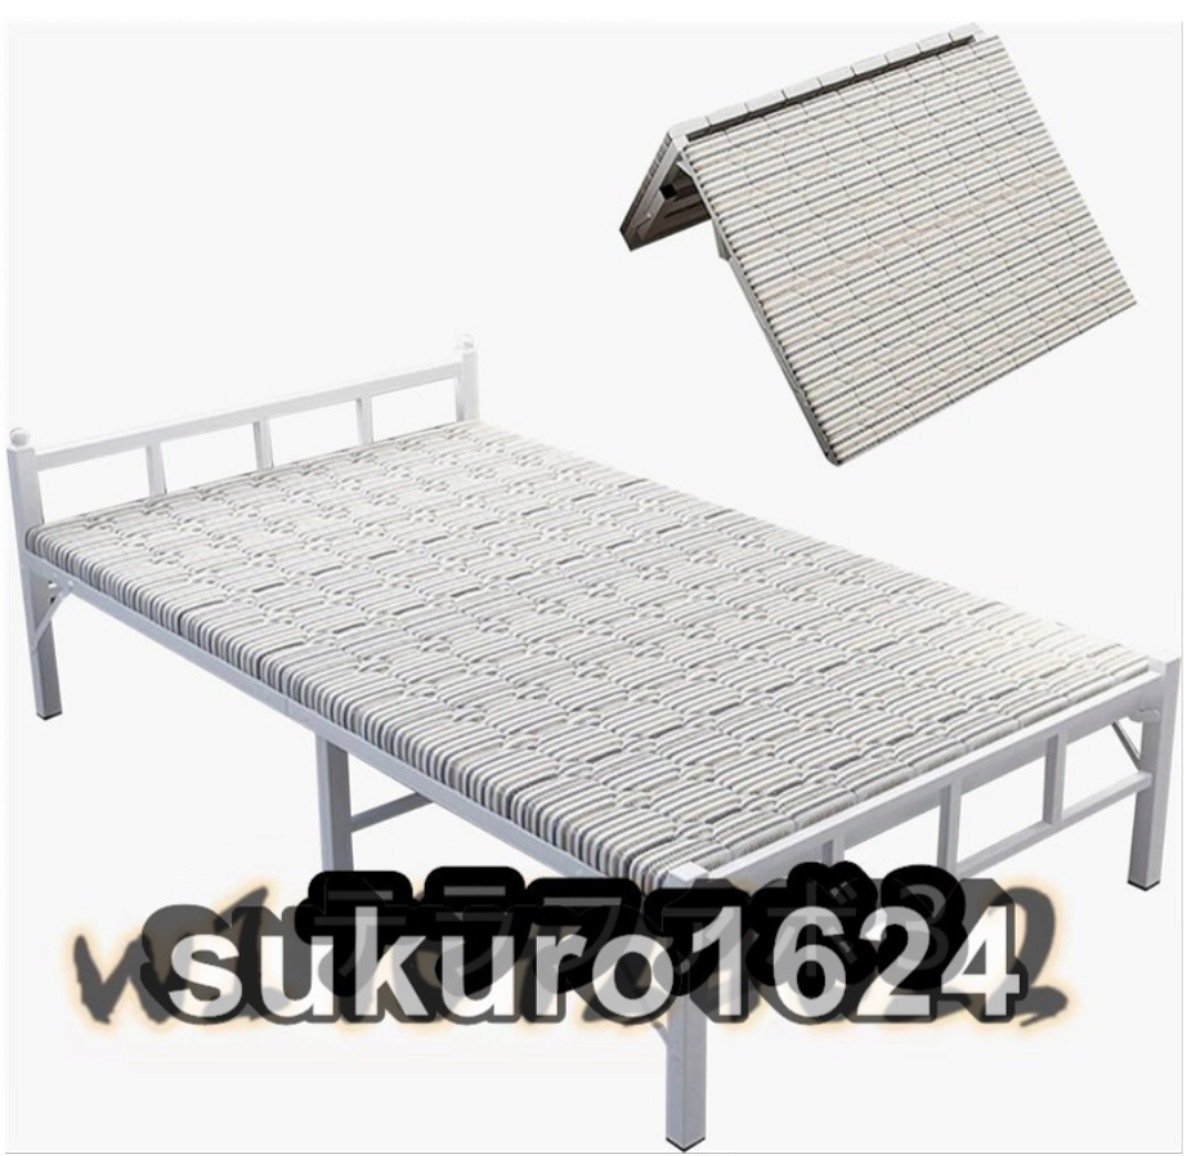 折りたたみベッド シングル 折り畳み式ベッド 収納 頑丈 マットレス付き 耐久性 通気性 介護用ベッド 簡易ベッド (幅100cm)_画像2